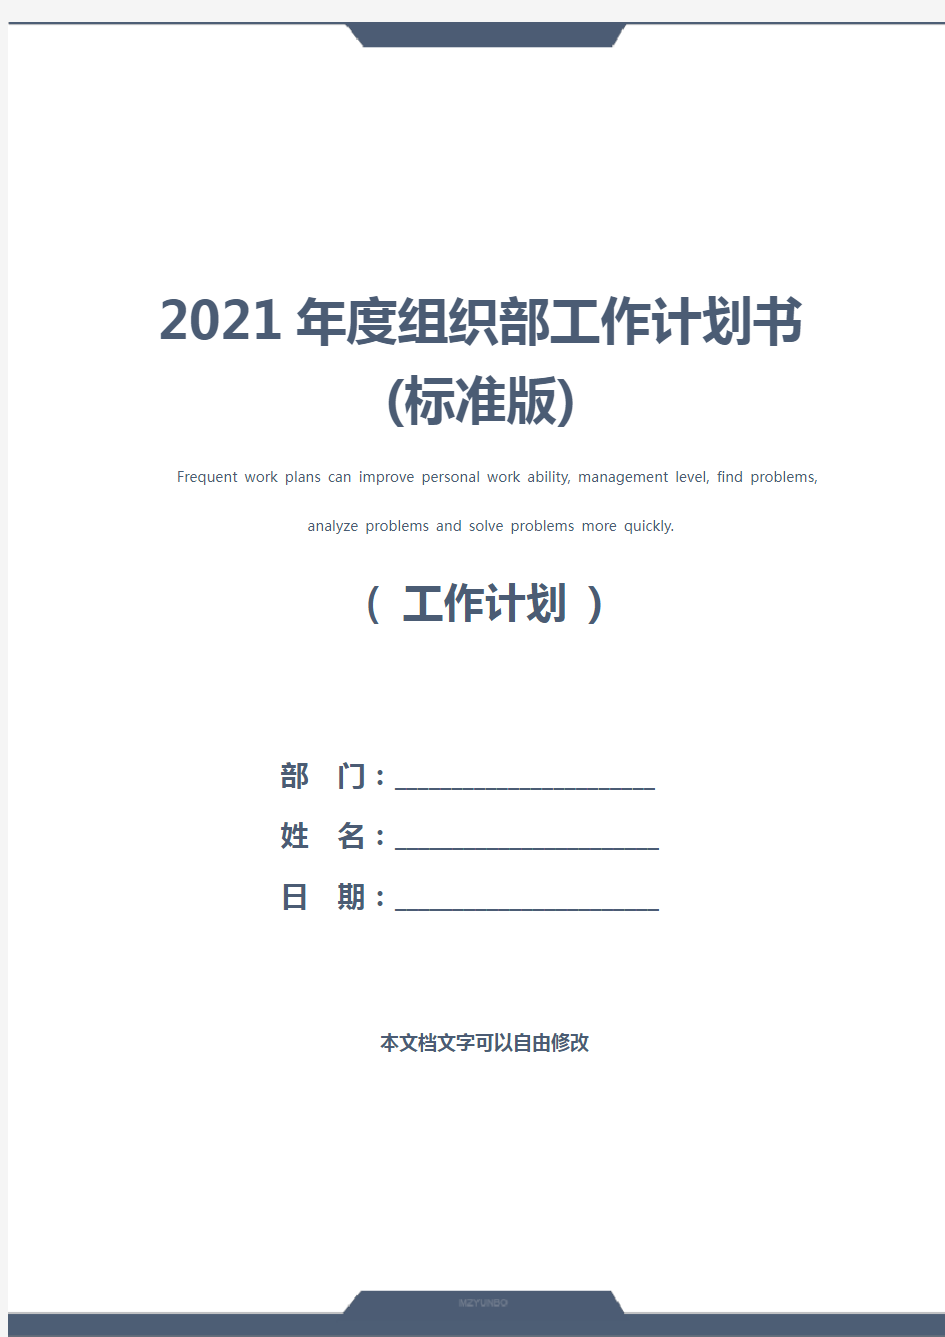 2021年度组织部工作计划书(标准版)